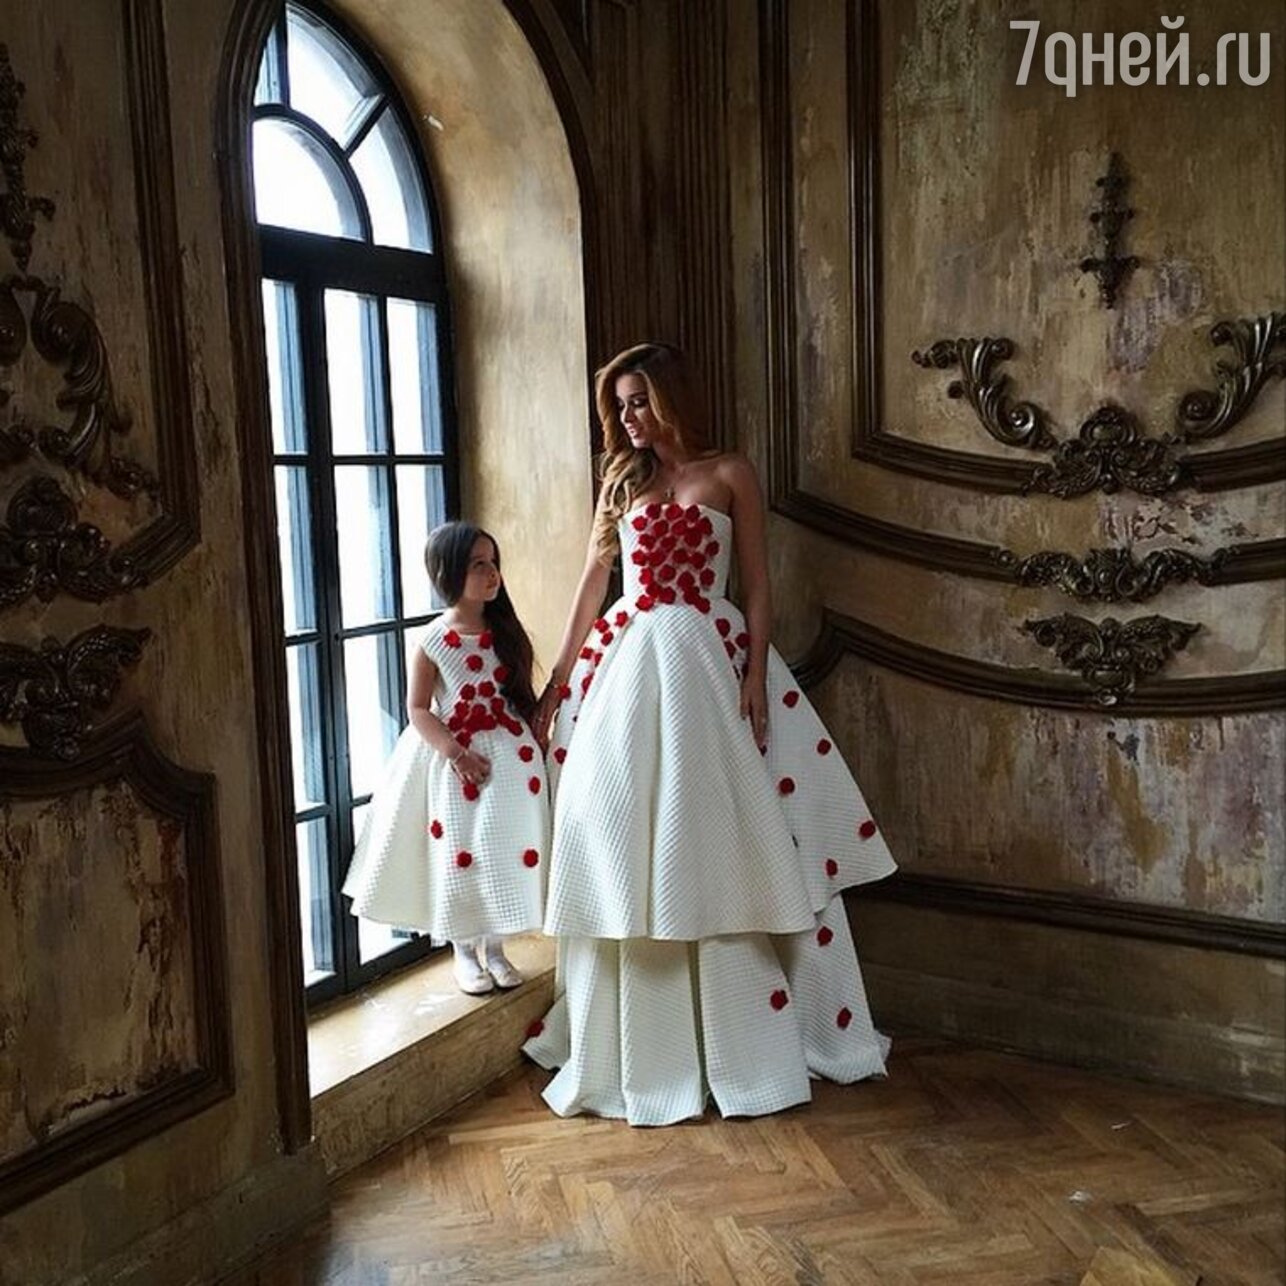 Свадебное платье Ксении Бородиной